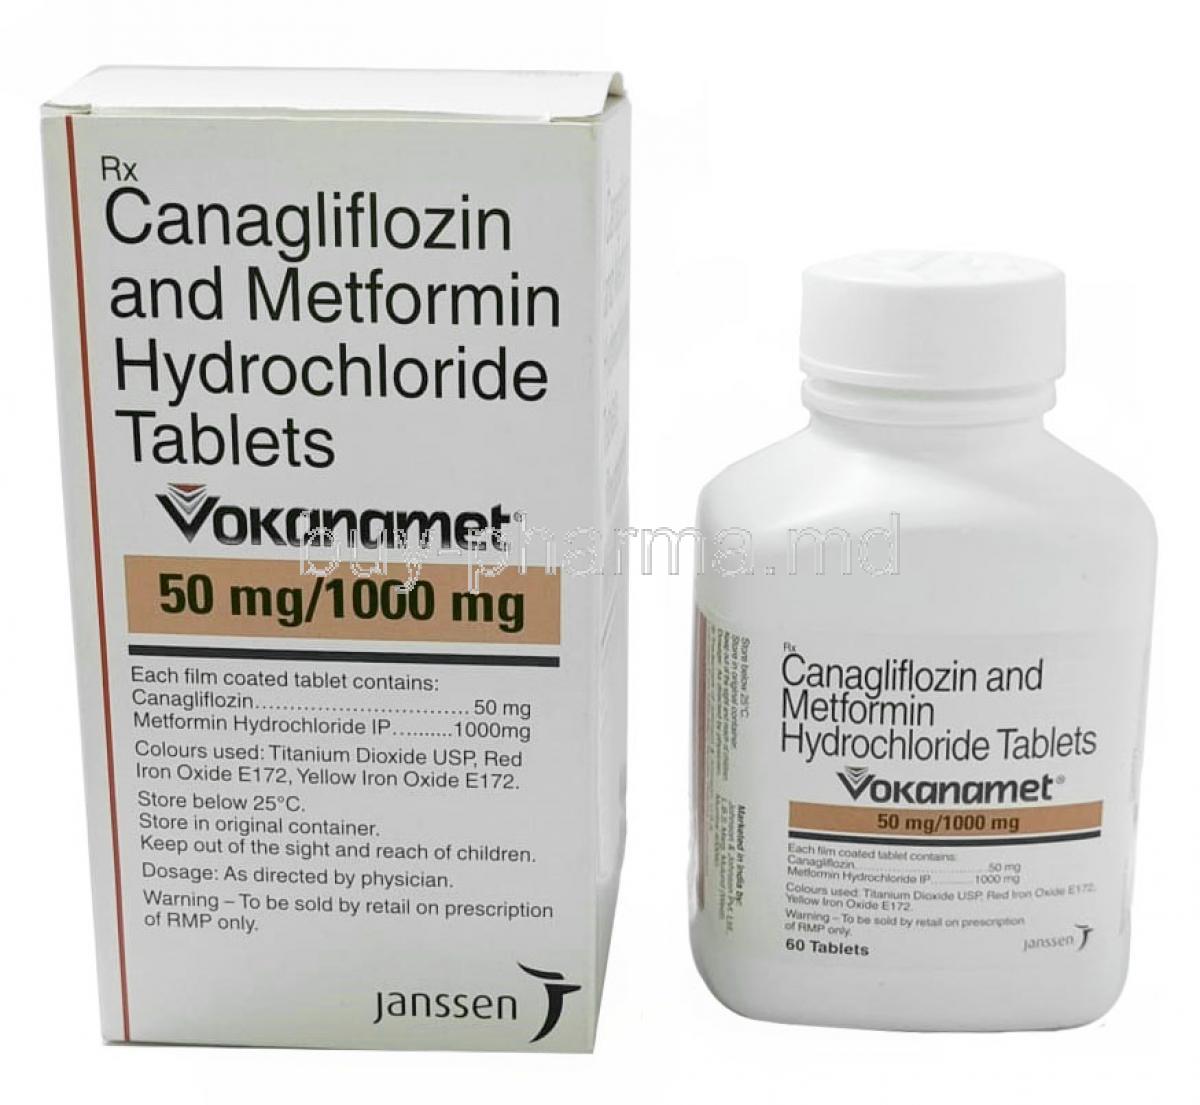 Vokanamet, Canagliflozin 50mg/ Metformin 1000mg, 60tablets, Johnson & Johnson Ltd, Box, Bottle